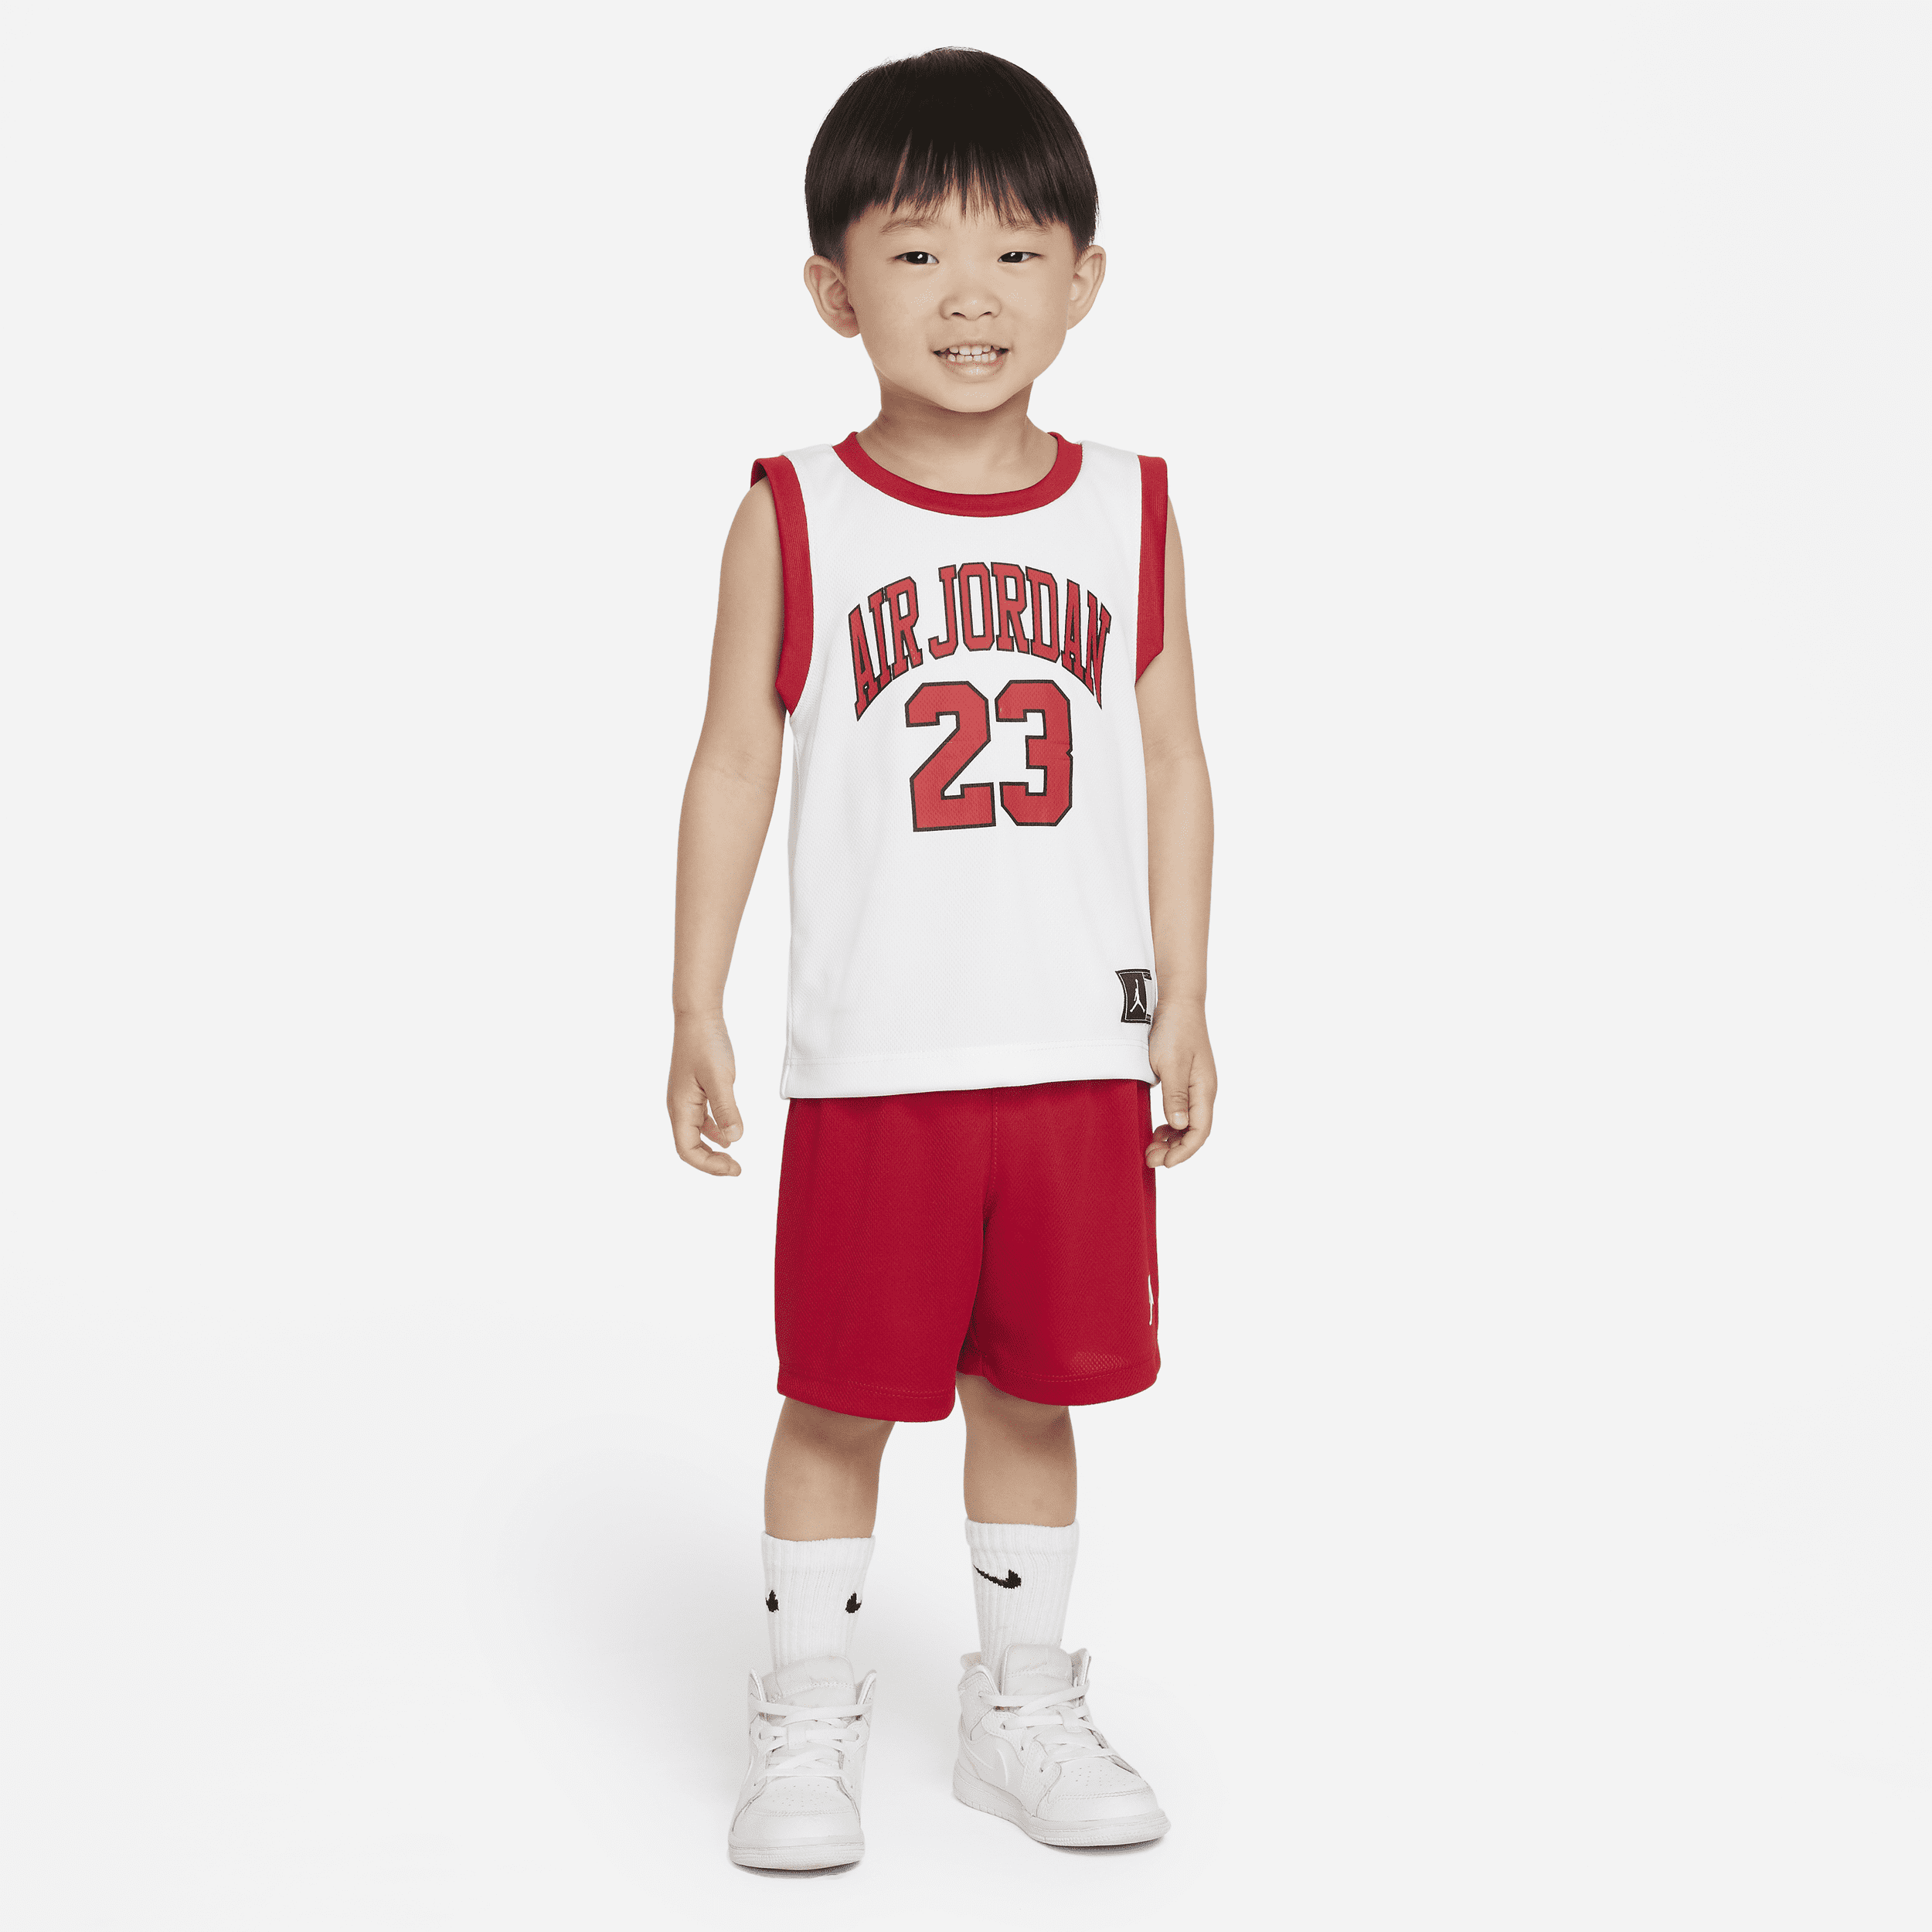 Jordan Conjunto de camiseta de tirantes y pantalón corto - Bebé (12-24M) - Rojo